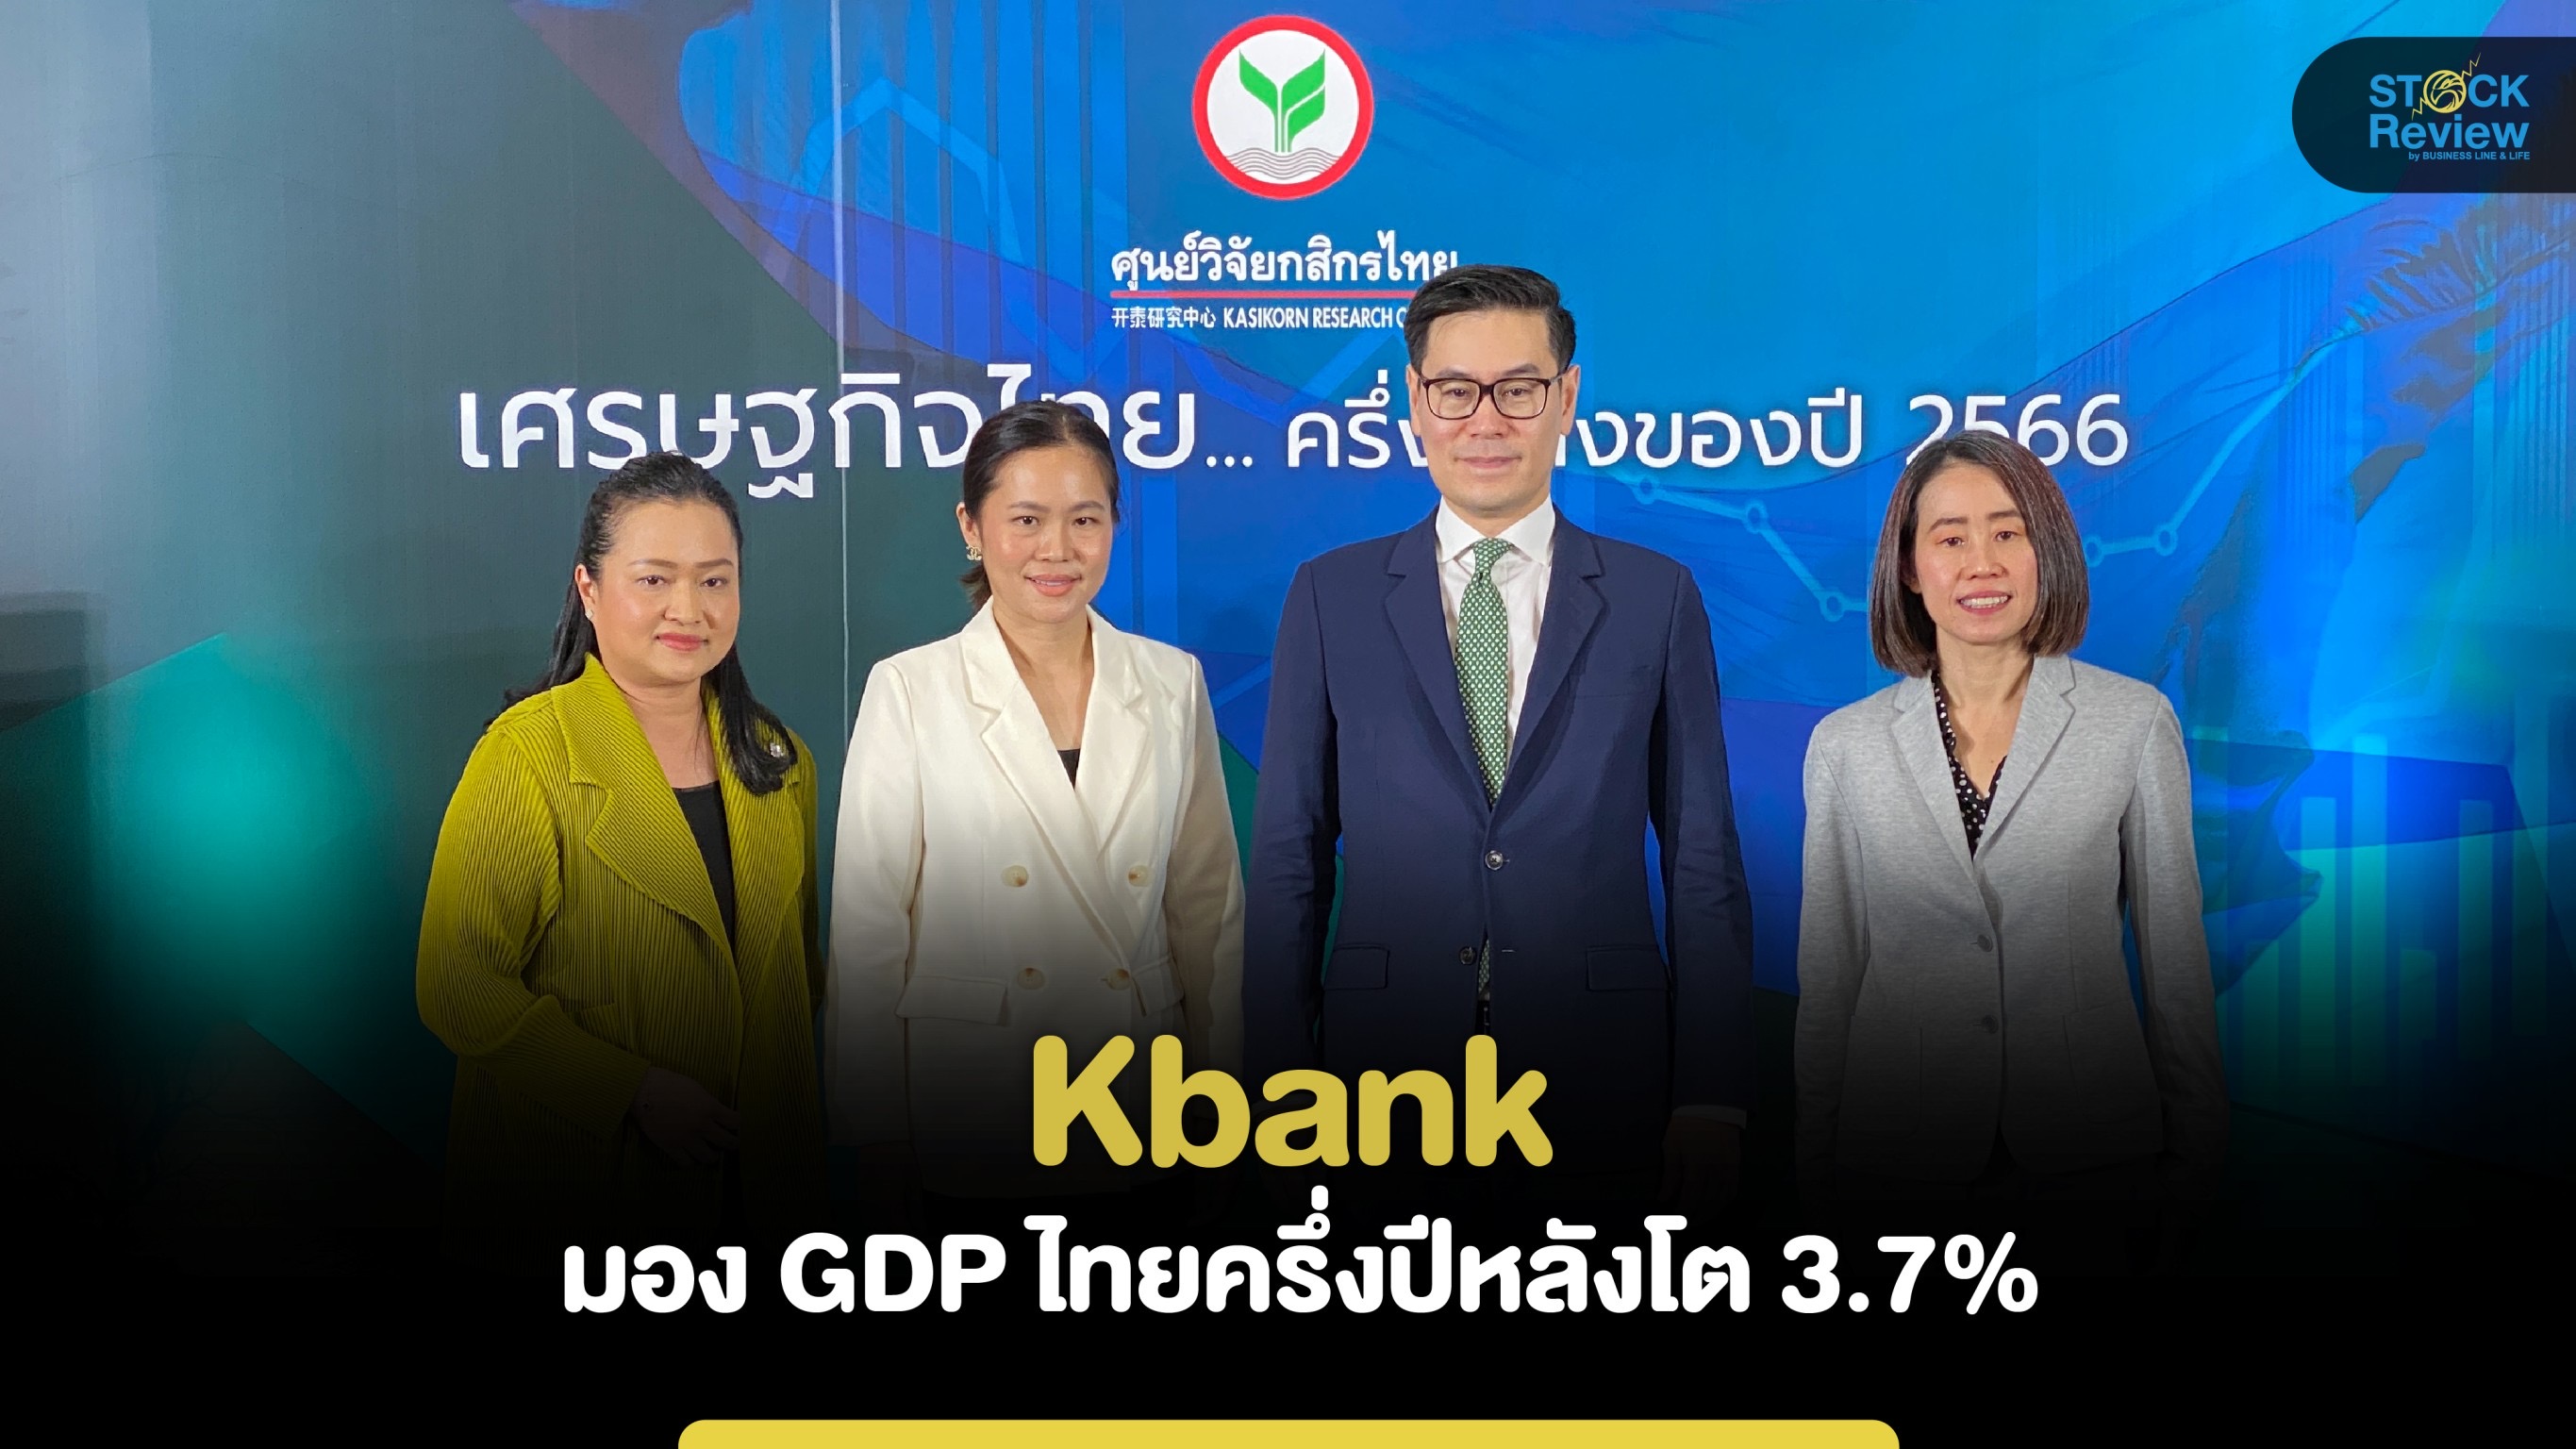 KBANK คาดเศรษฐกิจไทยครึ่งปีหลัง จีดีพีโต 3.7% ส่งออกติดลบ 1.2% หนี้ครัวเรือนสูง